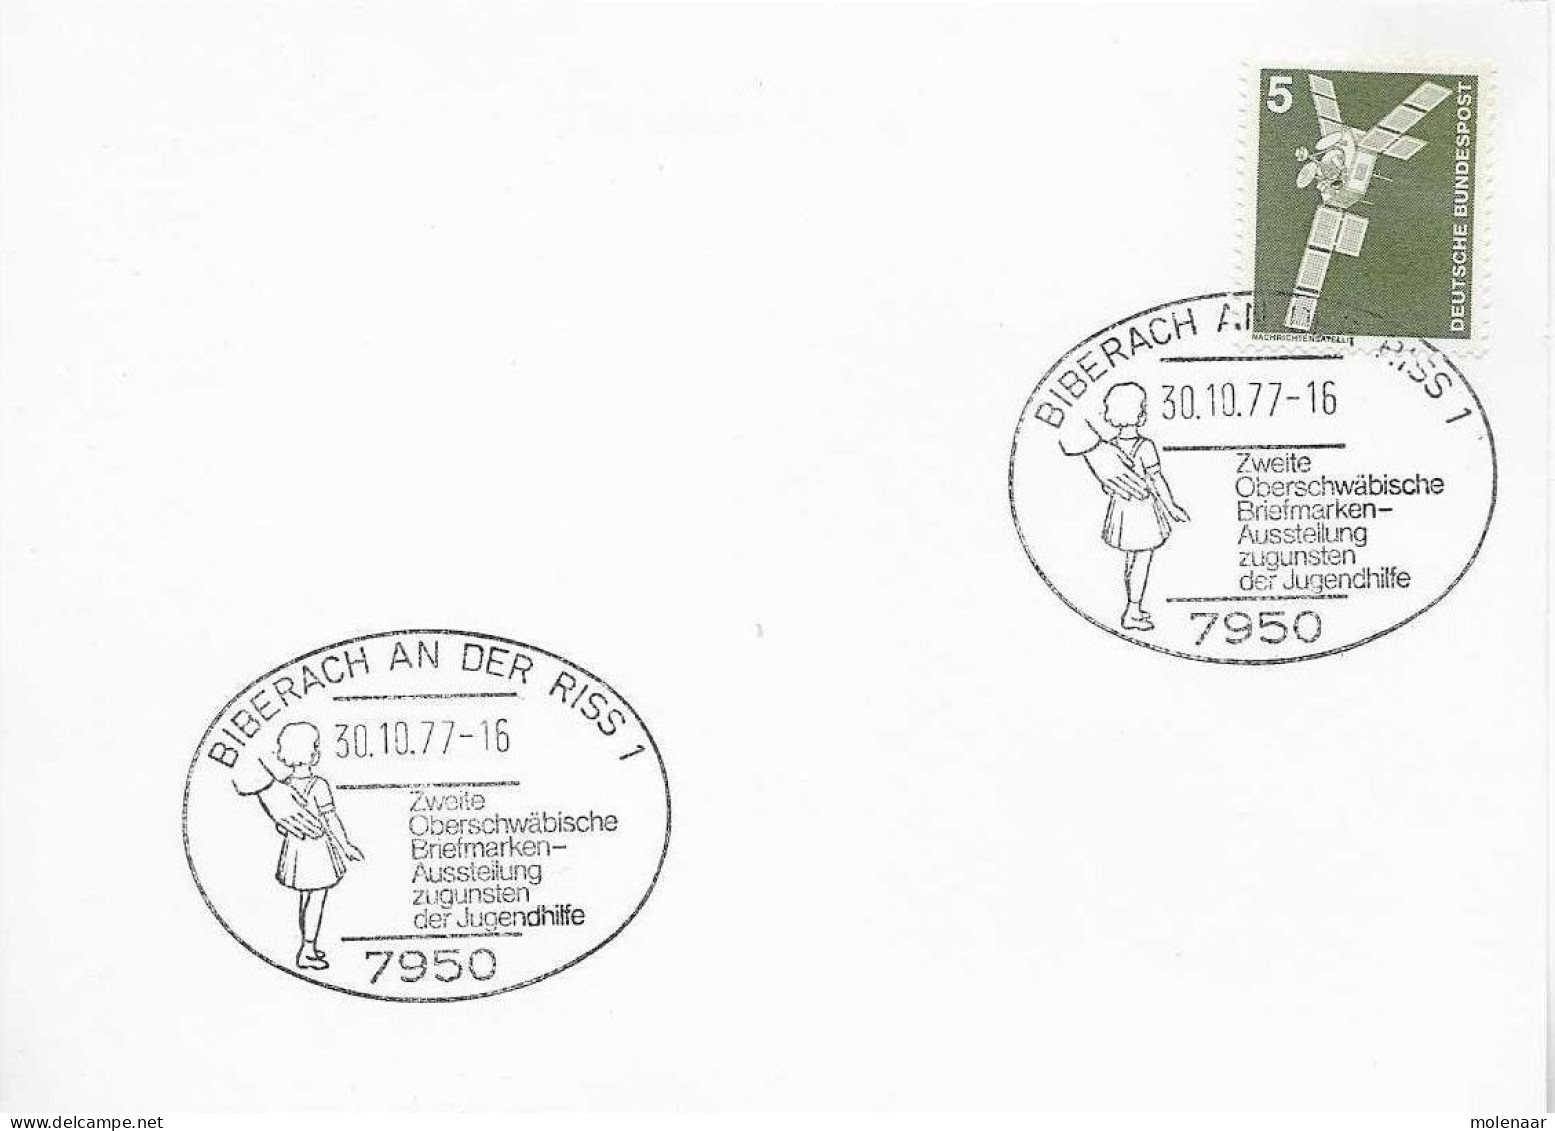 Postzegels > Europa > Duitsland > Berlijn > 1970-1979 > Kaart Met No. 494 (17150) - Brieven En Documenten